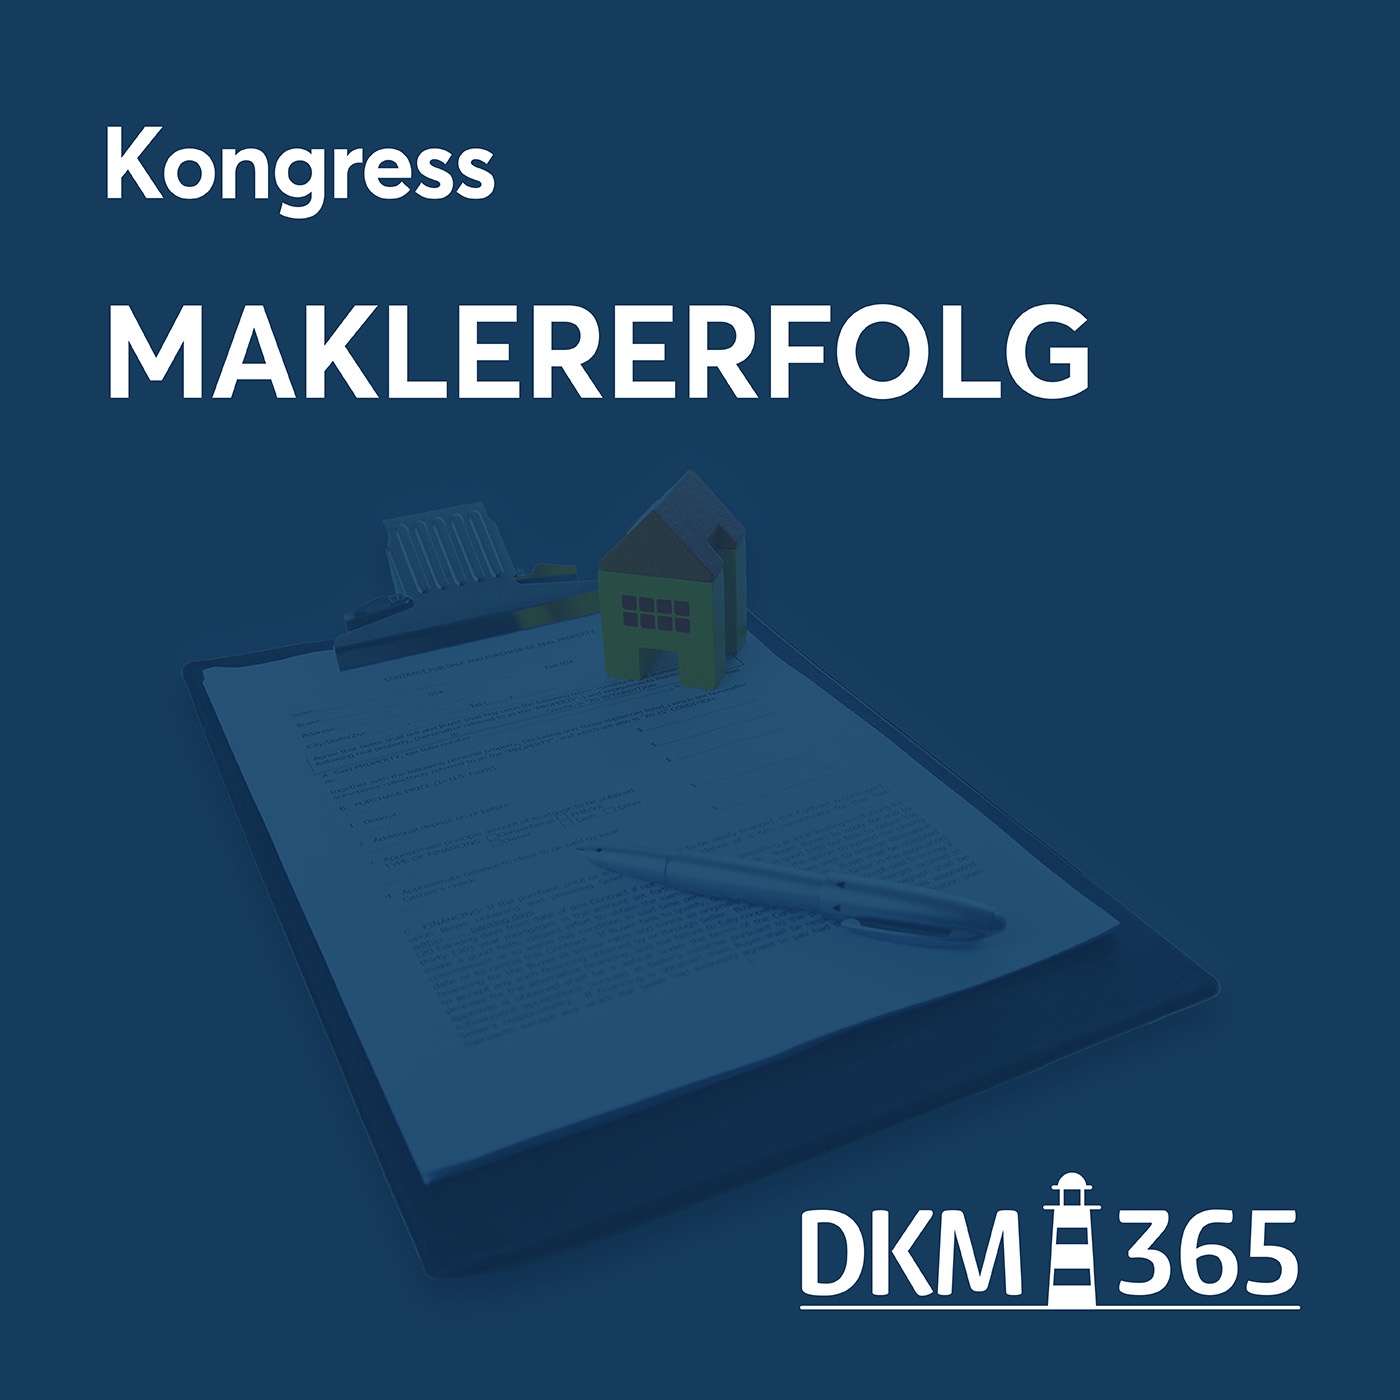 DKM OnStage - Kongress Maklererfolg mit Andreas Lohrenz